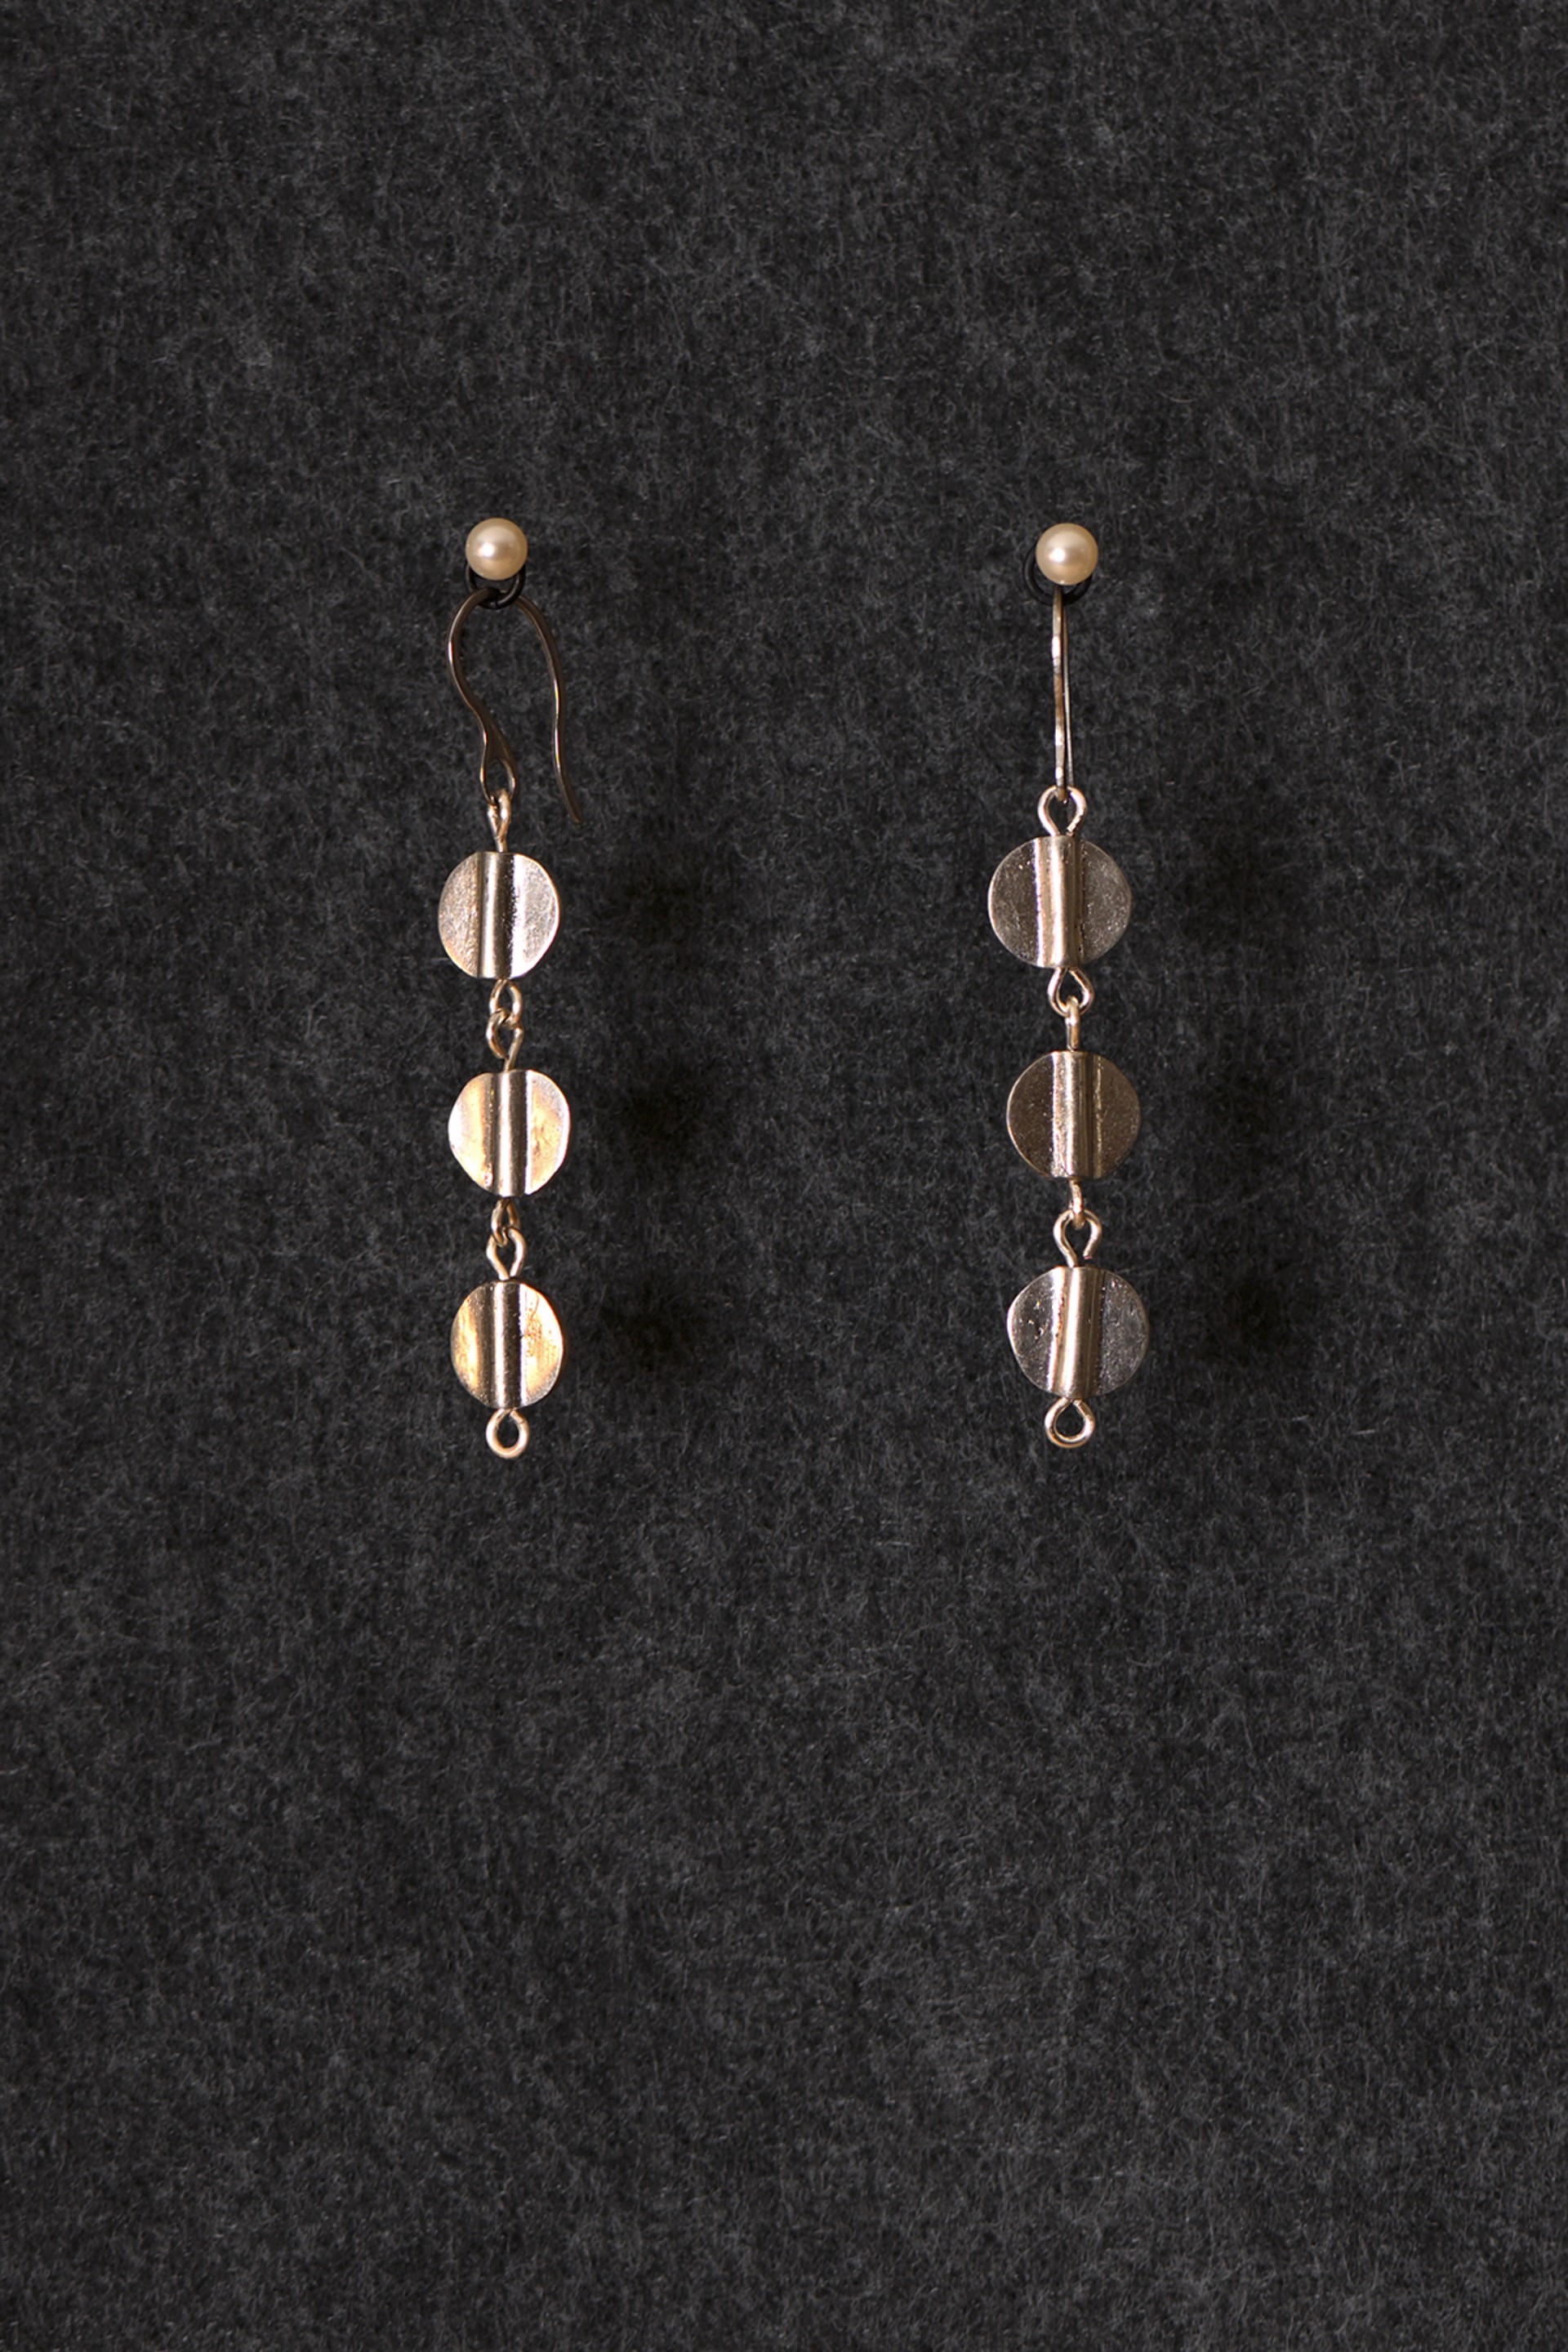 Silver Aspen Earrings by Cameron Johnson